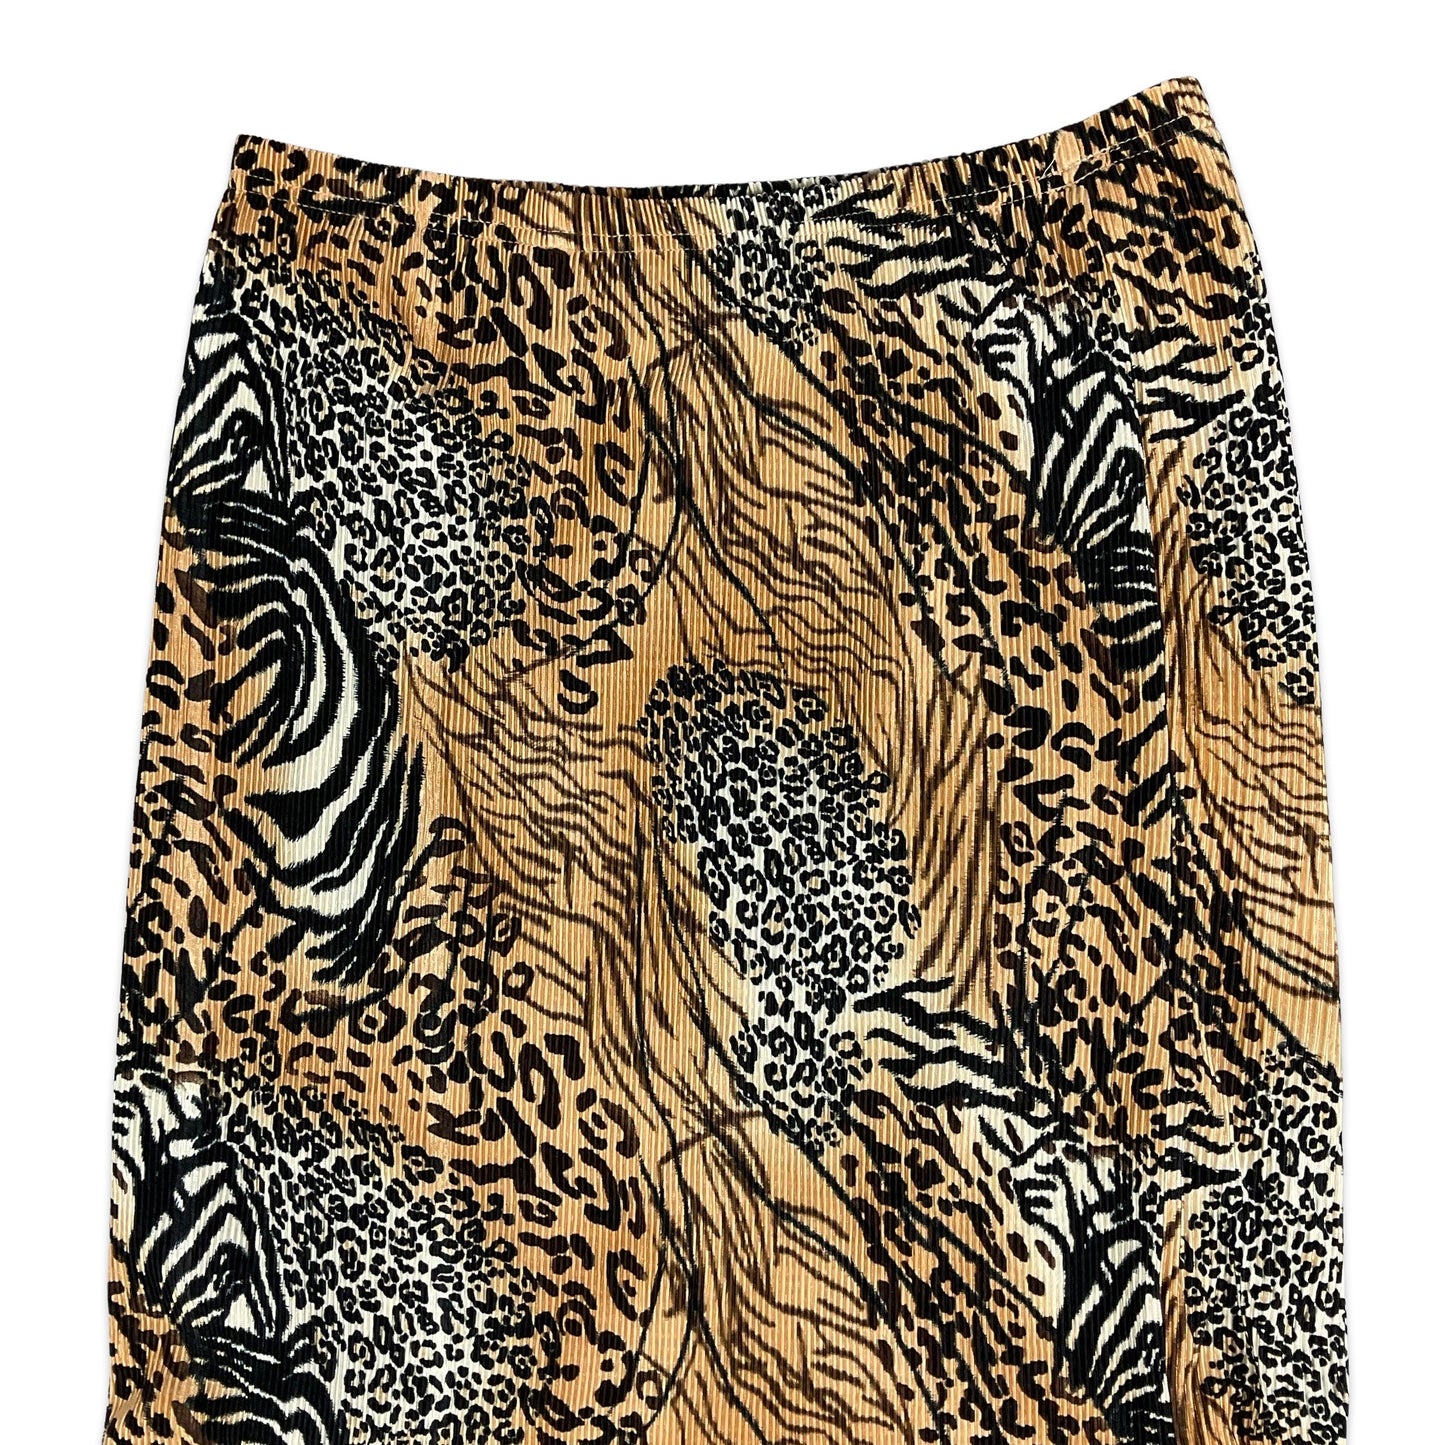 90s Animal Print Mermaid Midi Skirt